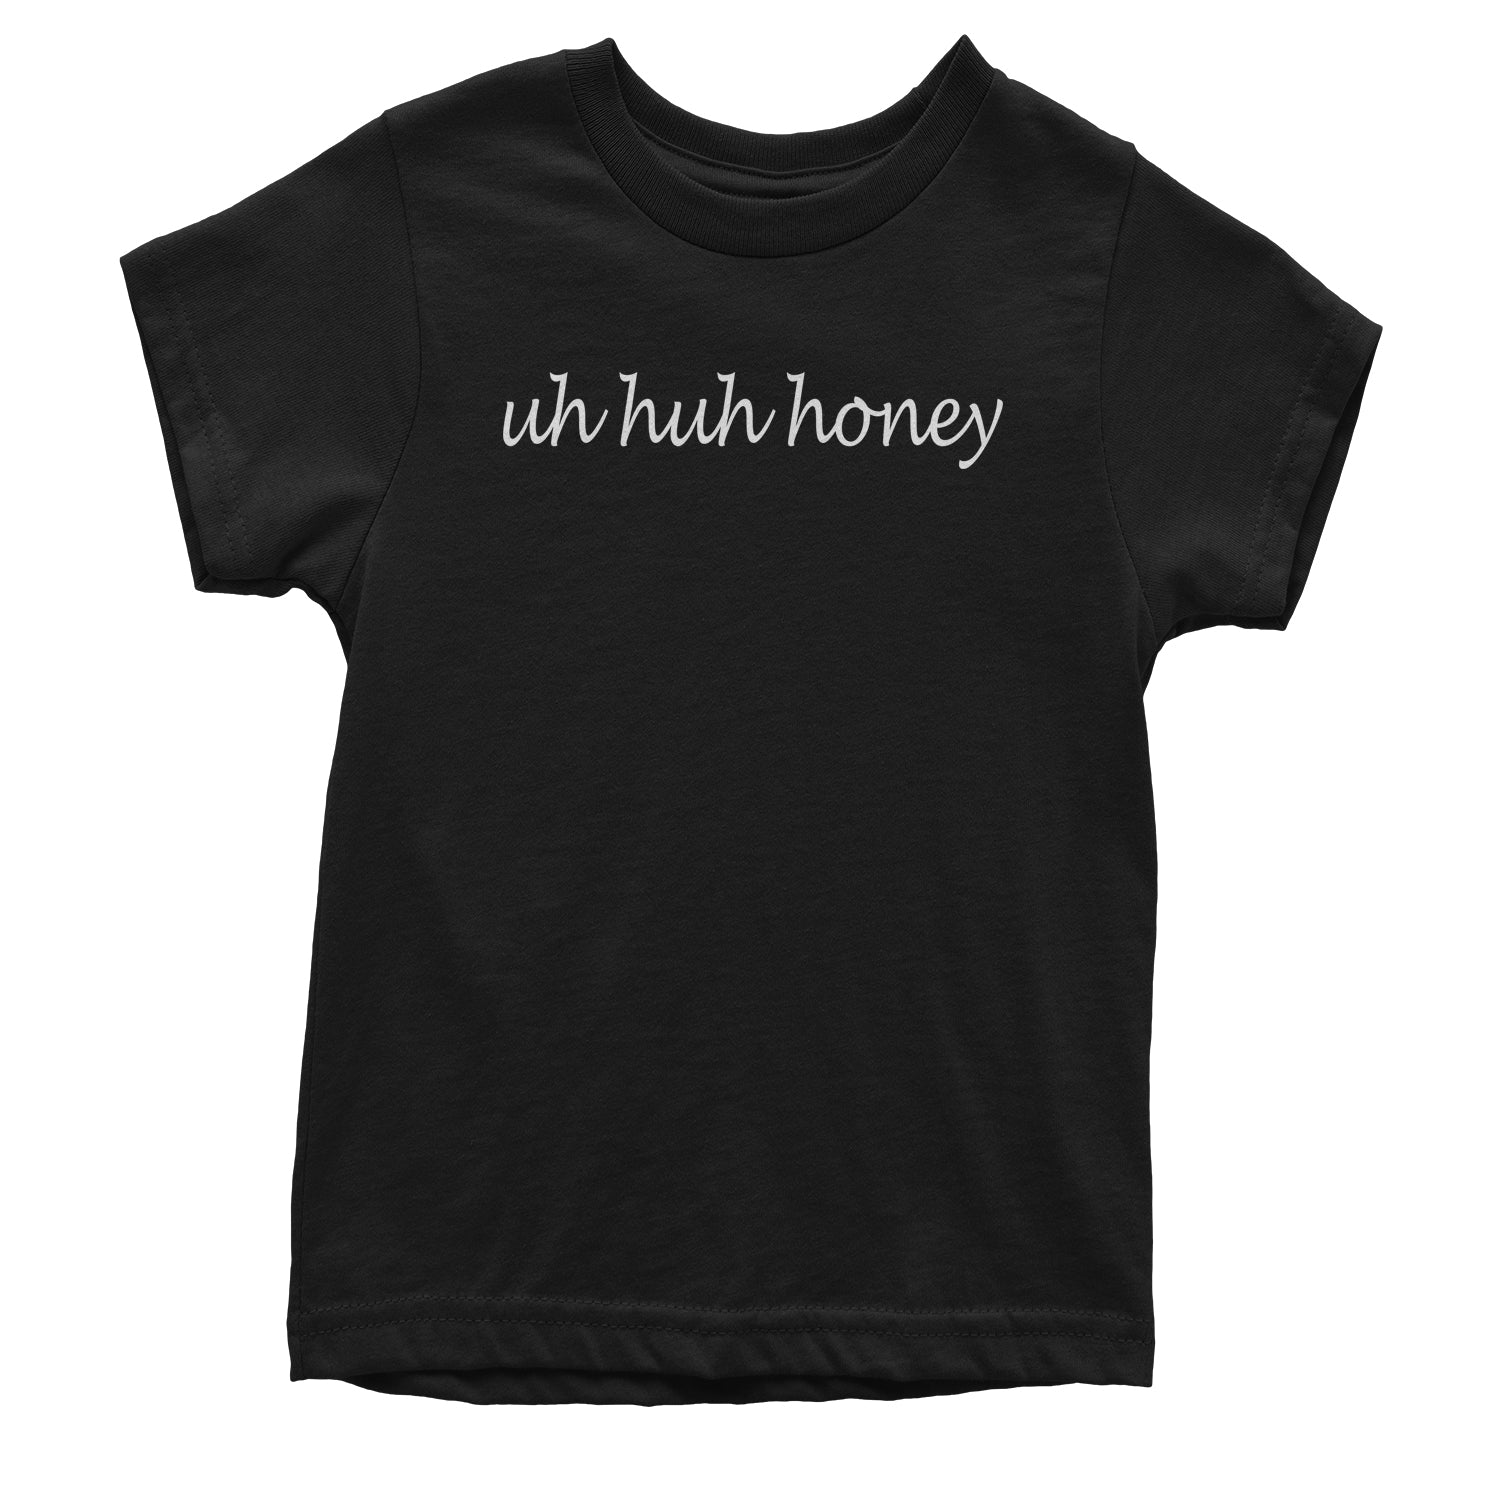 Uh Huh Honey Youth T-shirt uhhuh, uhuh, unhunh by Expression Tees